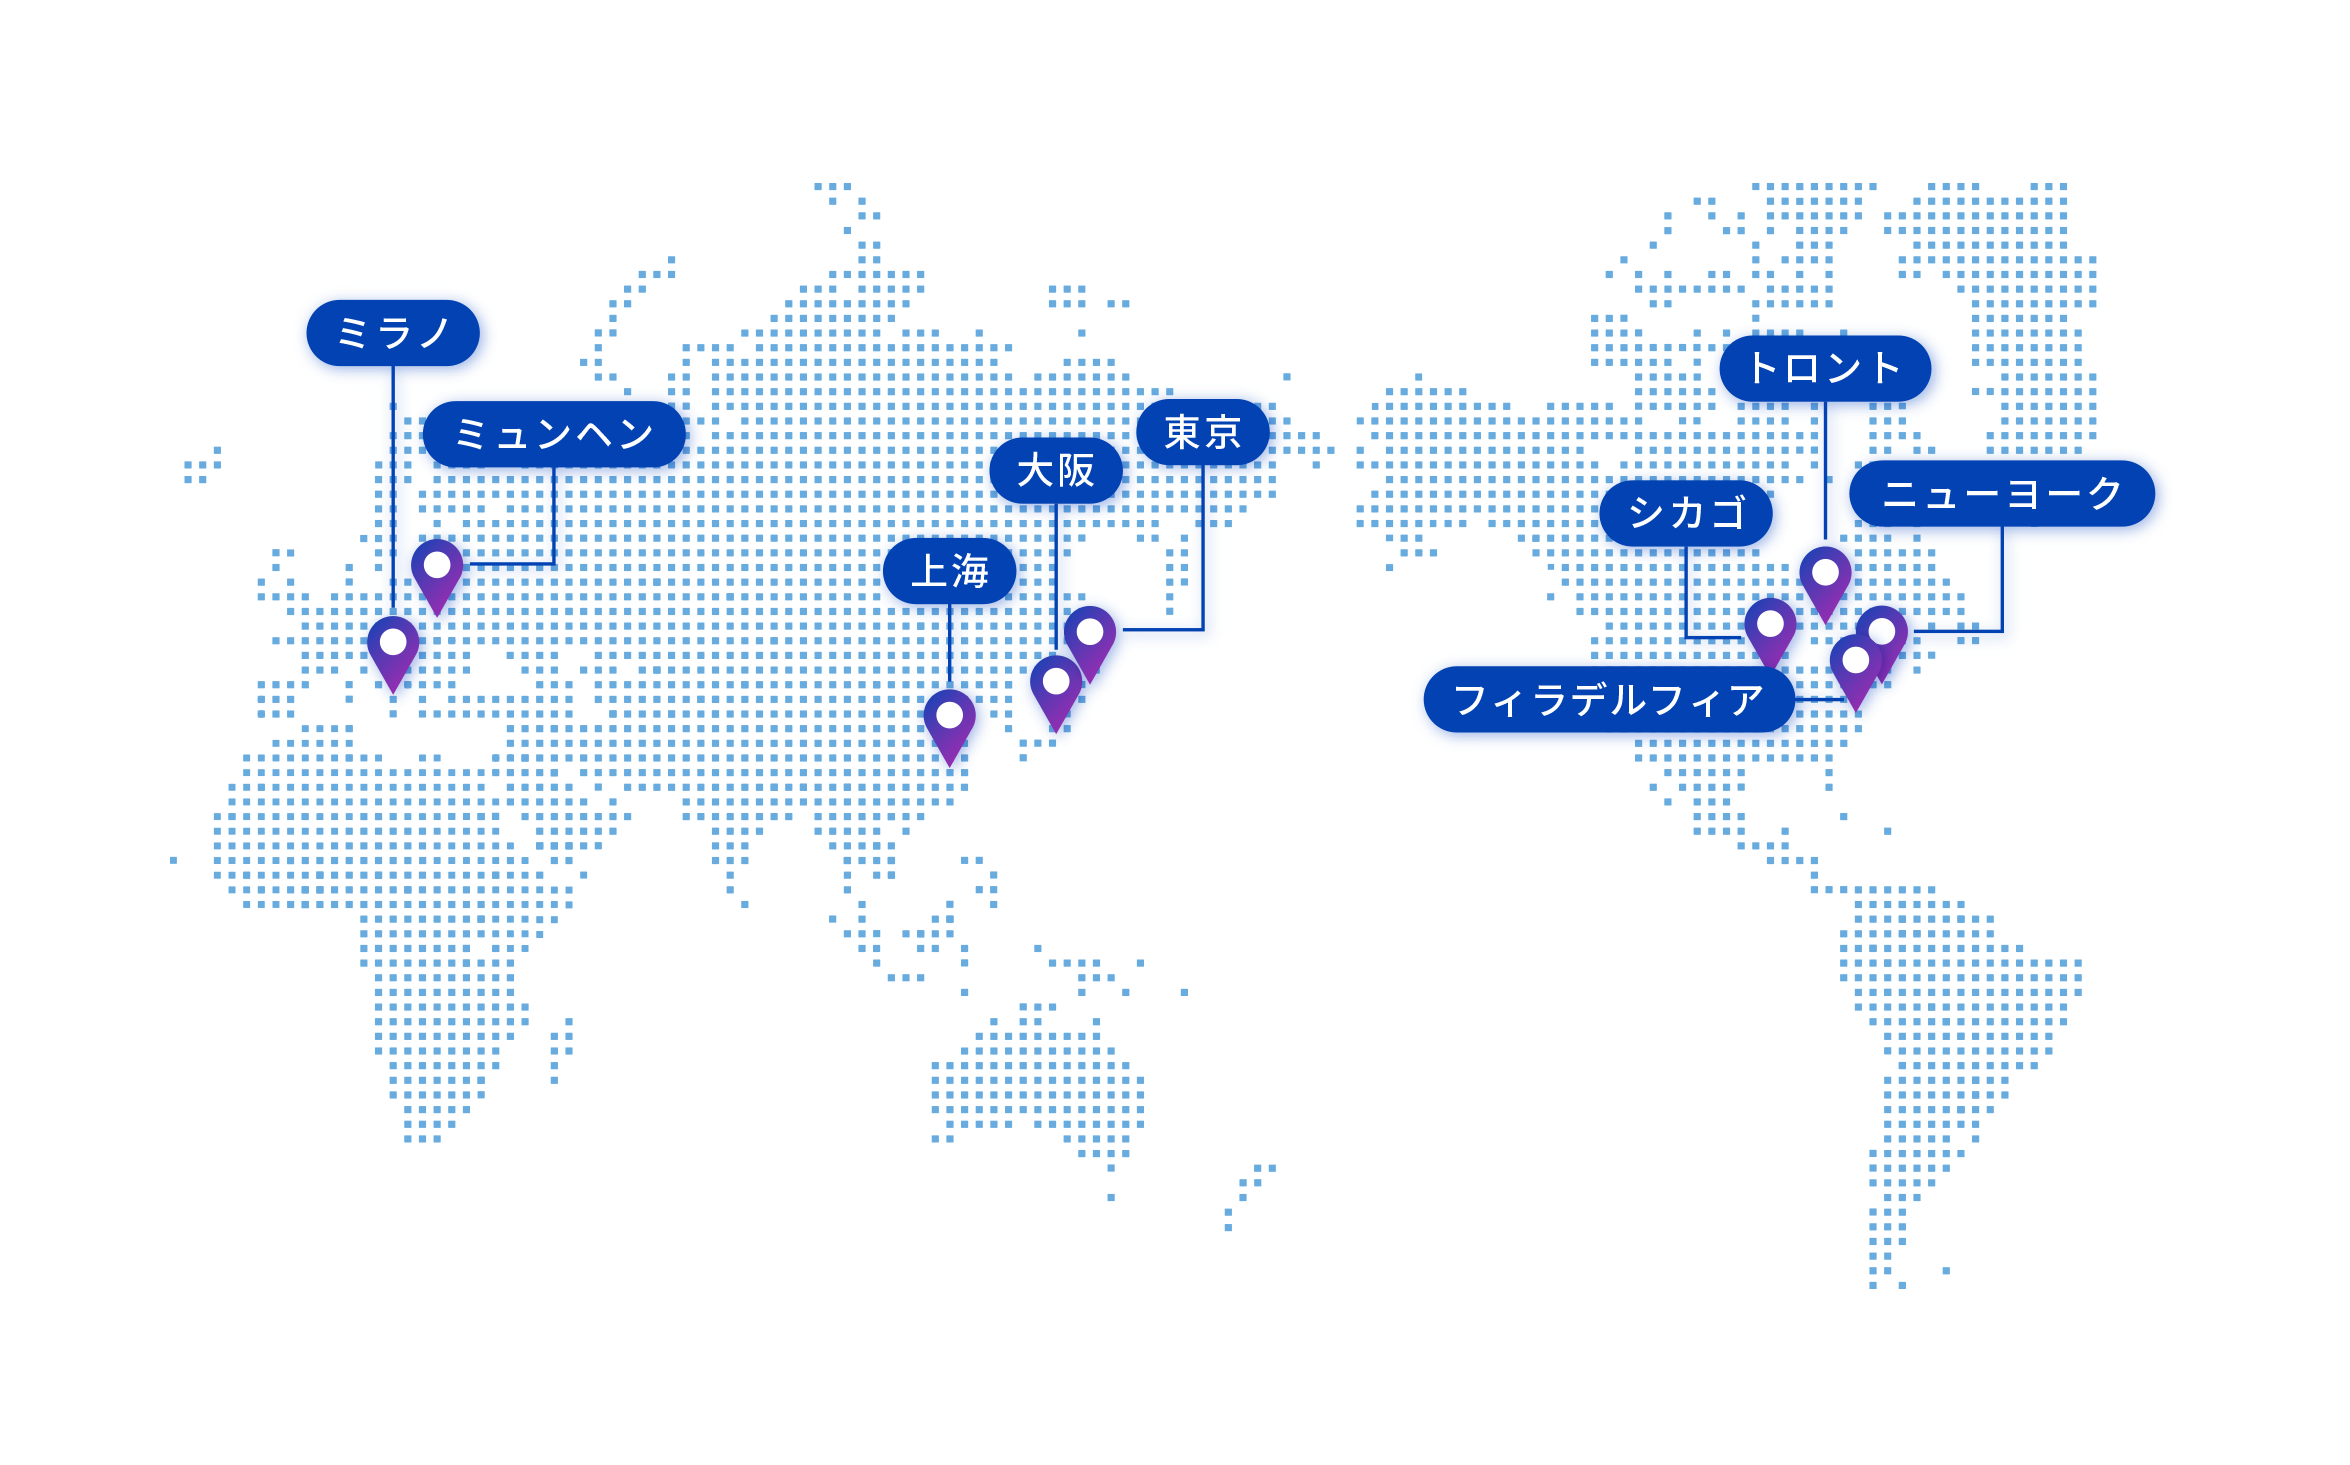 世界地図の上に電通ヘルスの拠点が存在する各国の都市「東京」「大阪」「ニューヨーク」「フィラデルフィア」「シカゴ」「トロント」「ミュンヘン」「ミラノ」「上海」が示された図